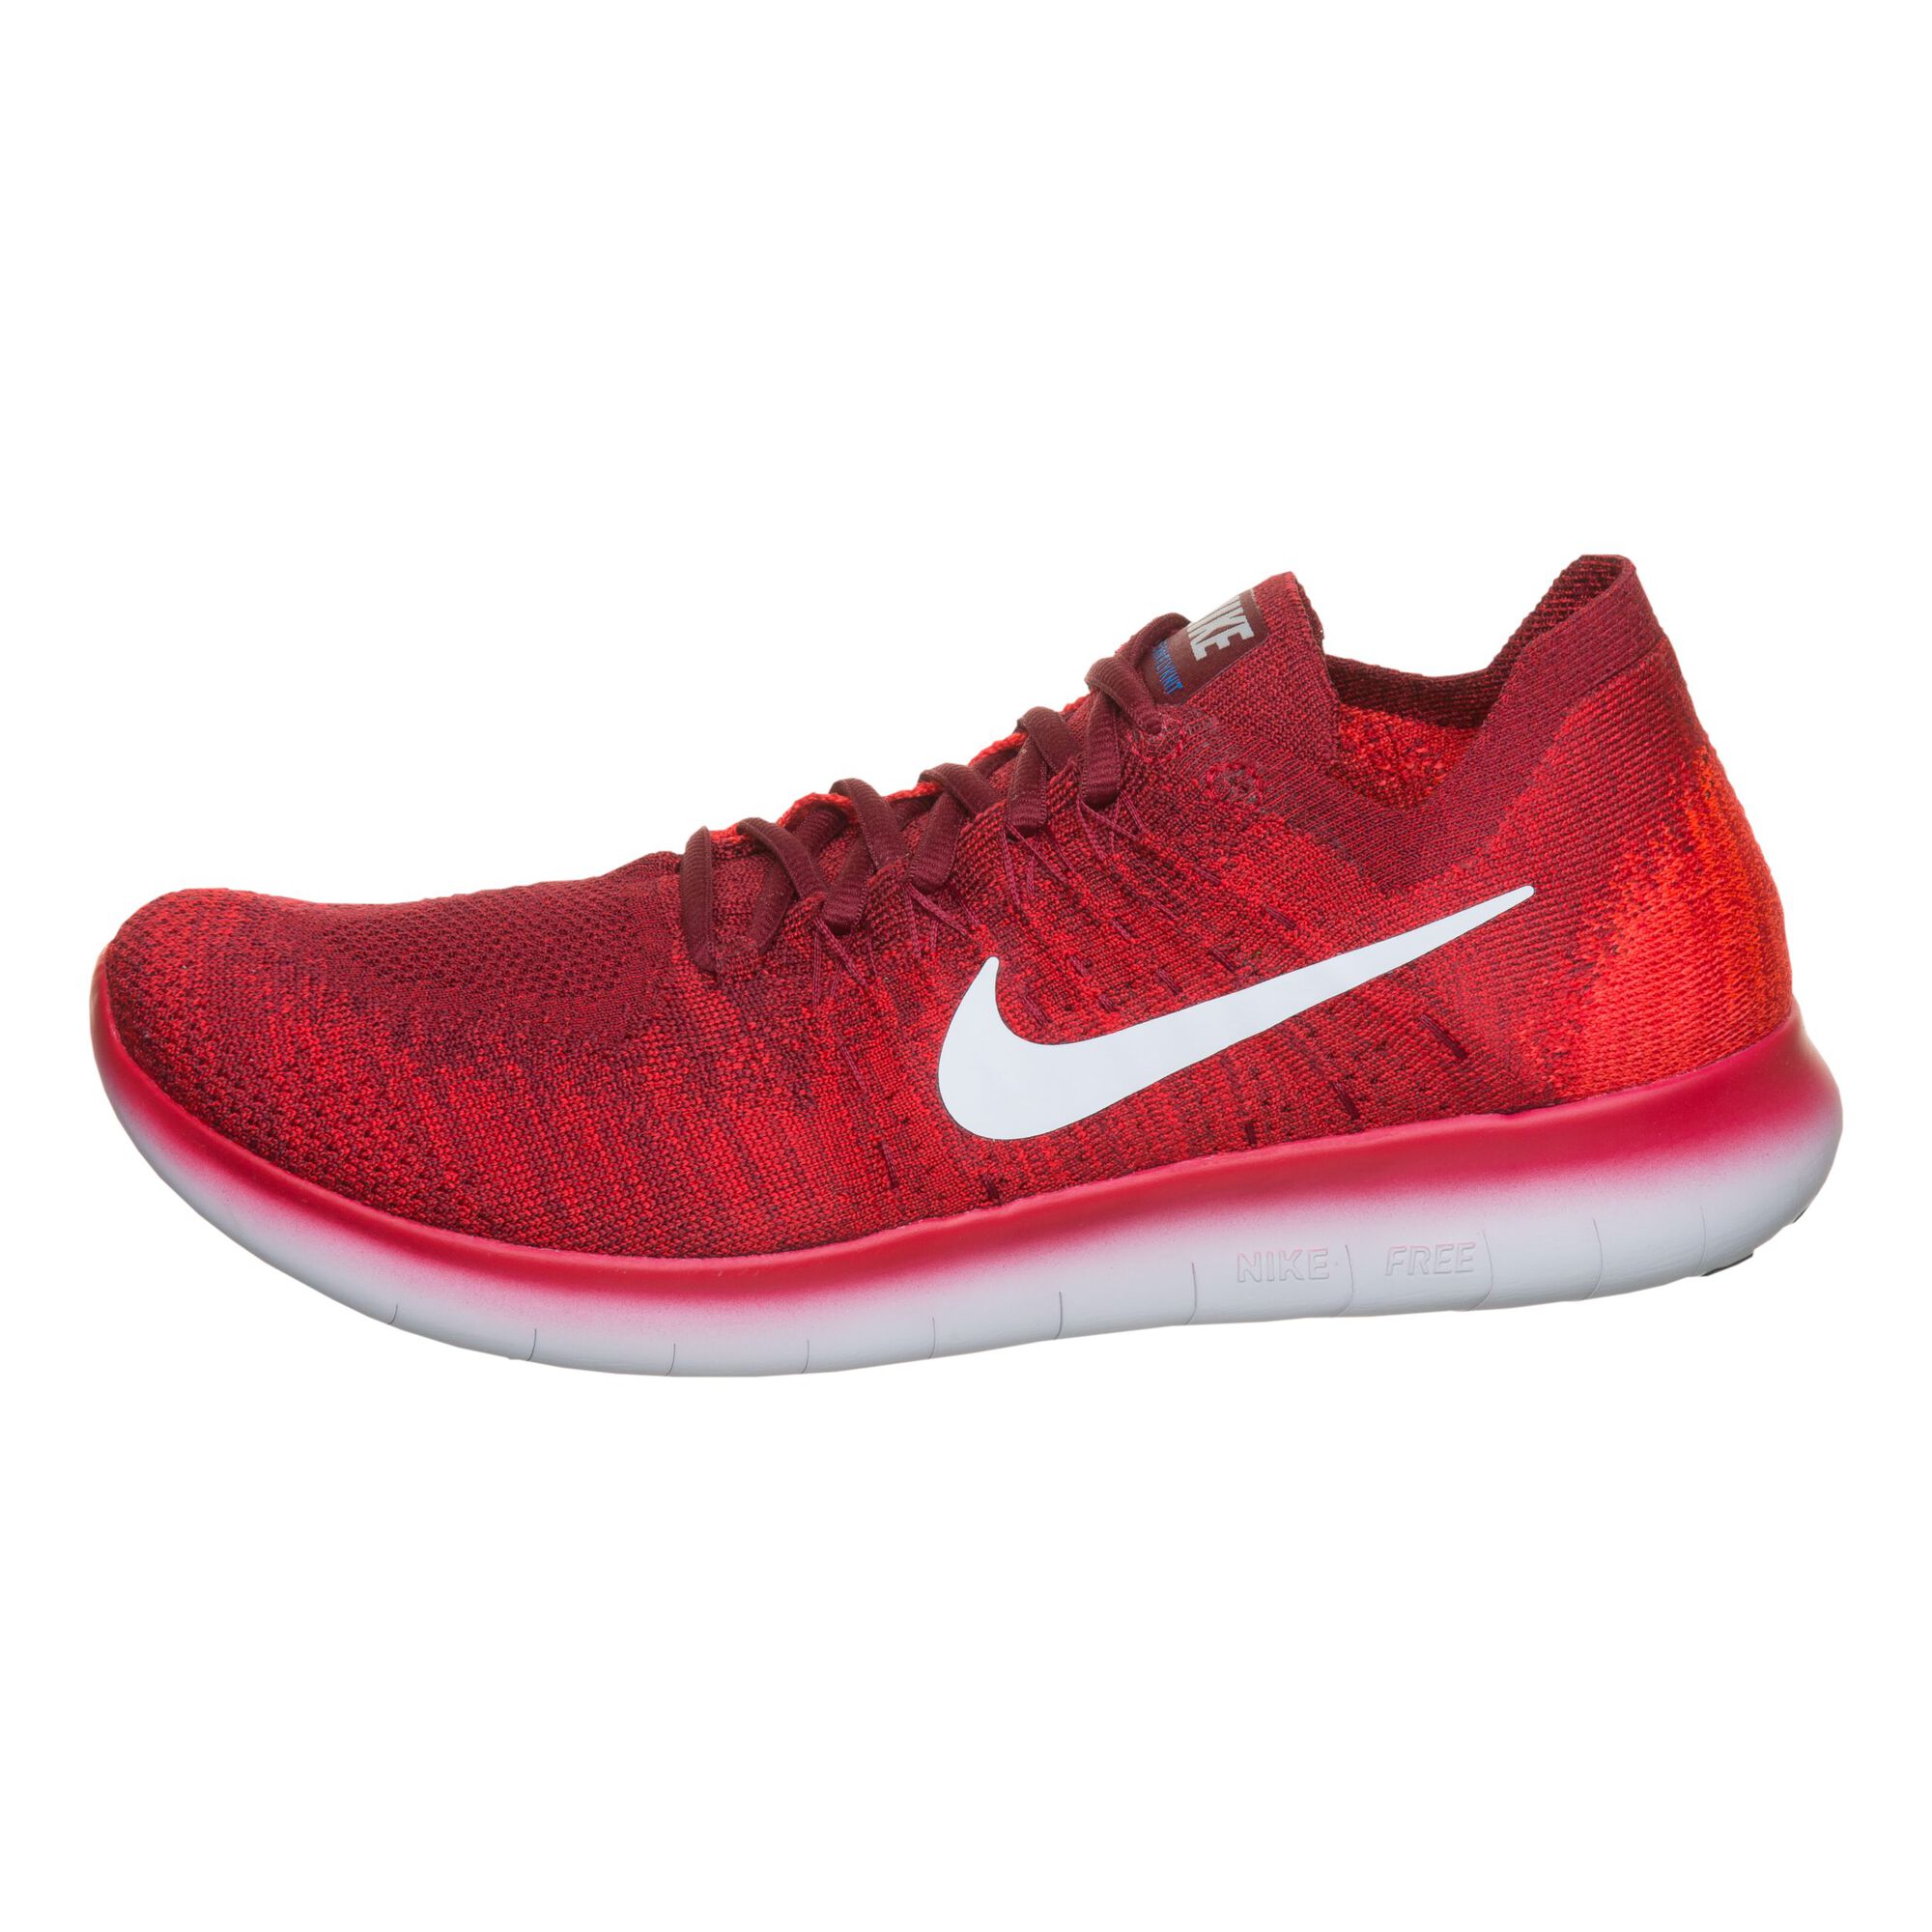 Nevelig Namens nikkel buy Nike Free Run Flyknit 2017 Fitness Shoe Men - Red, White online |  Tennis-Point